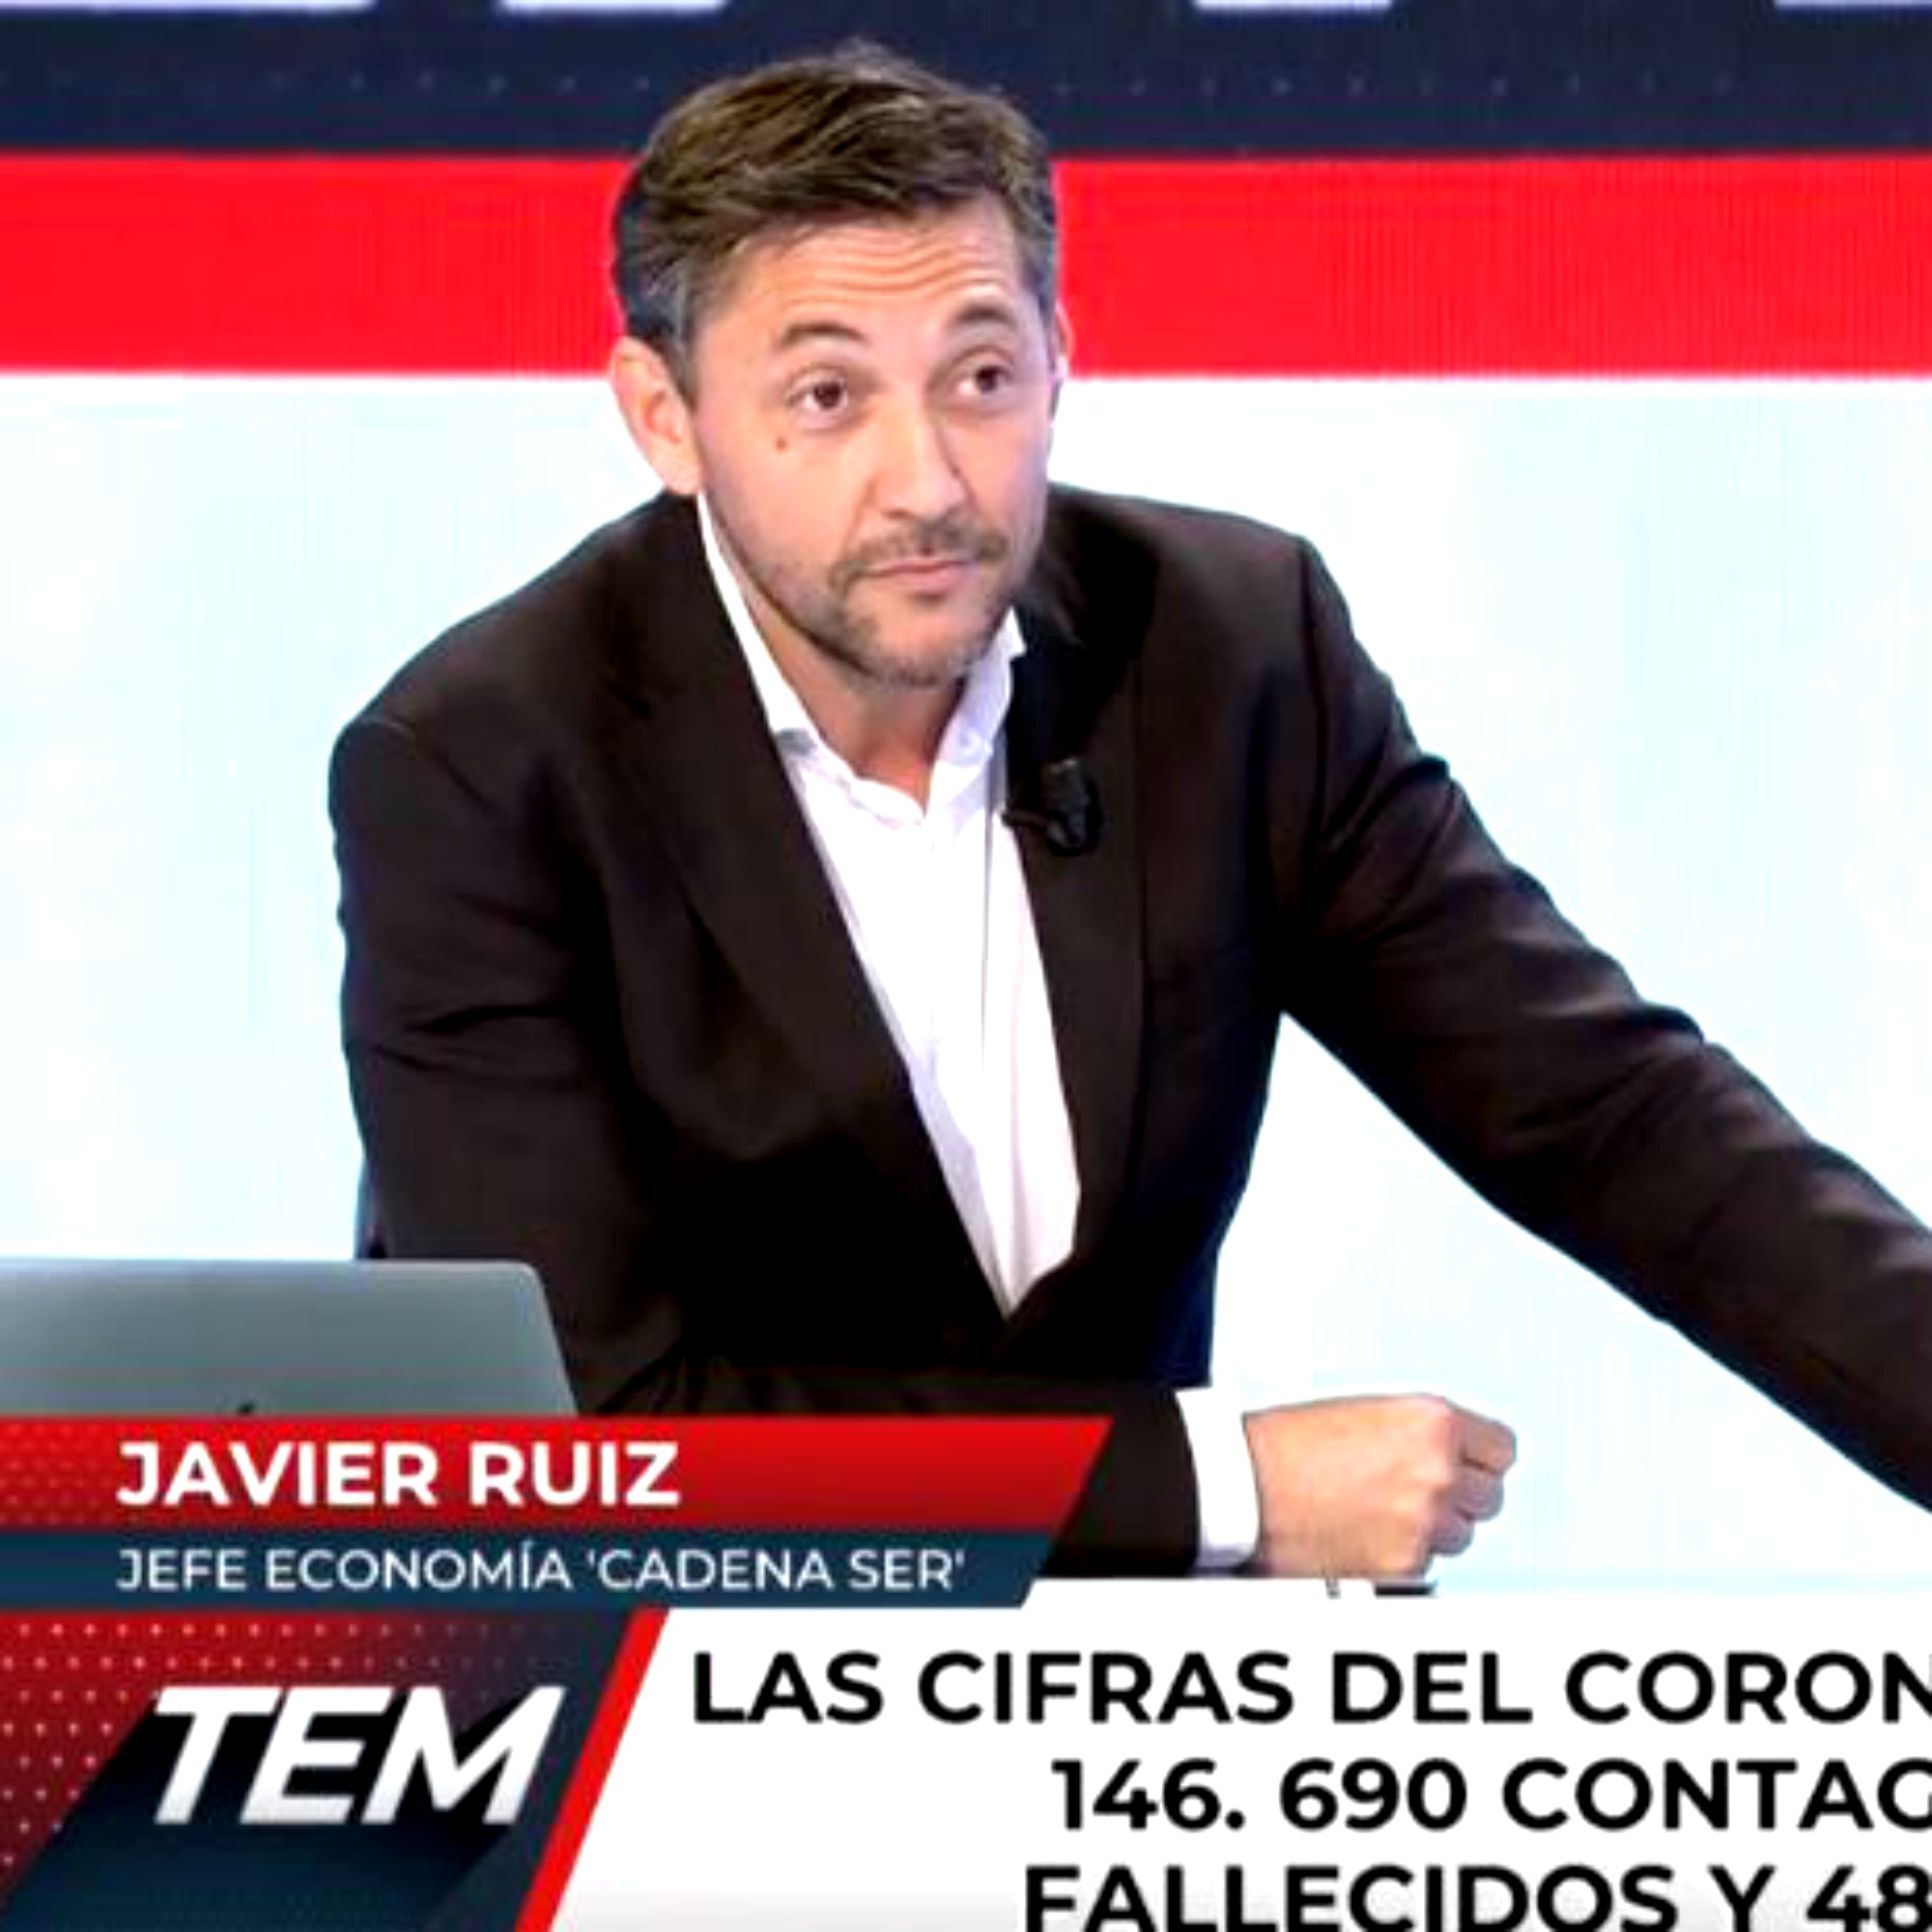 “Eres un impertinente”: acalorada discusión entre Javier Ruiz y Naranjo en Todo es mentira